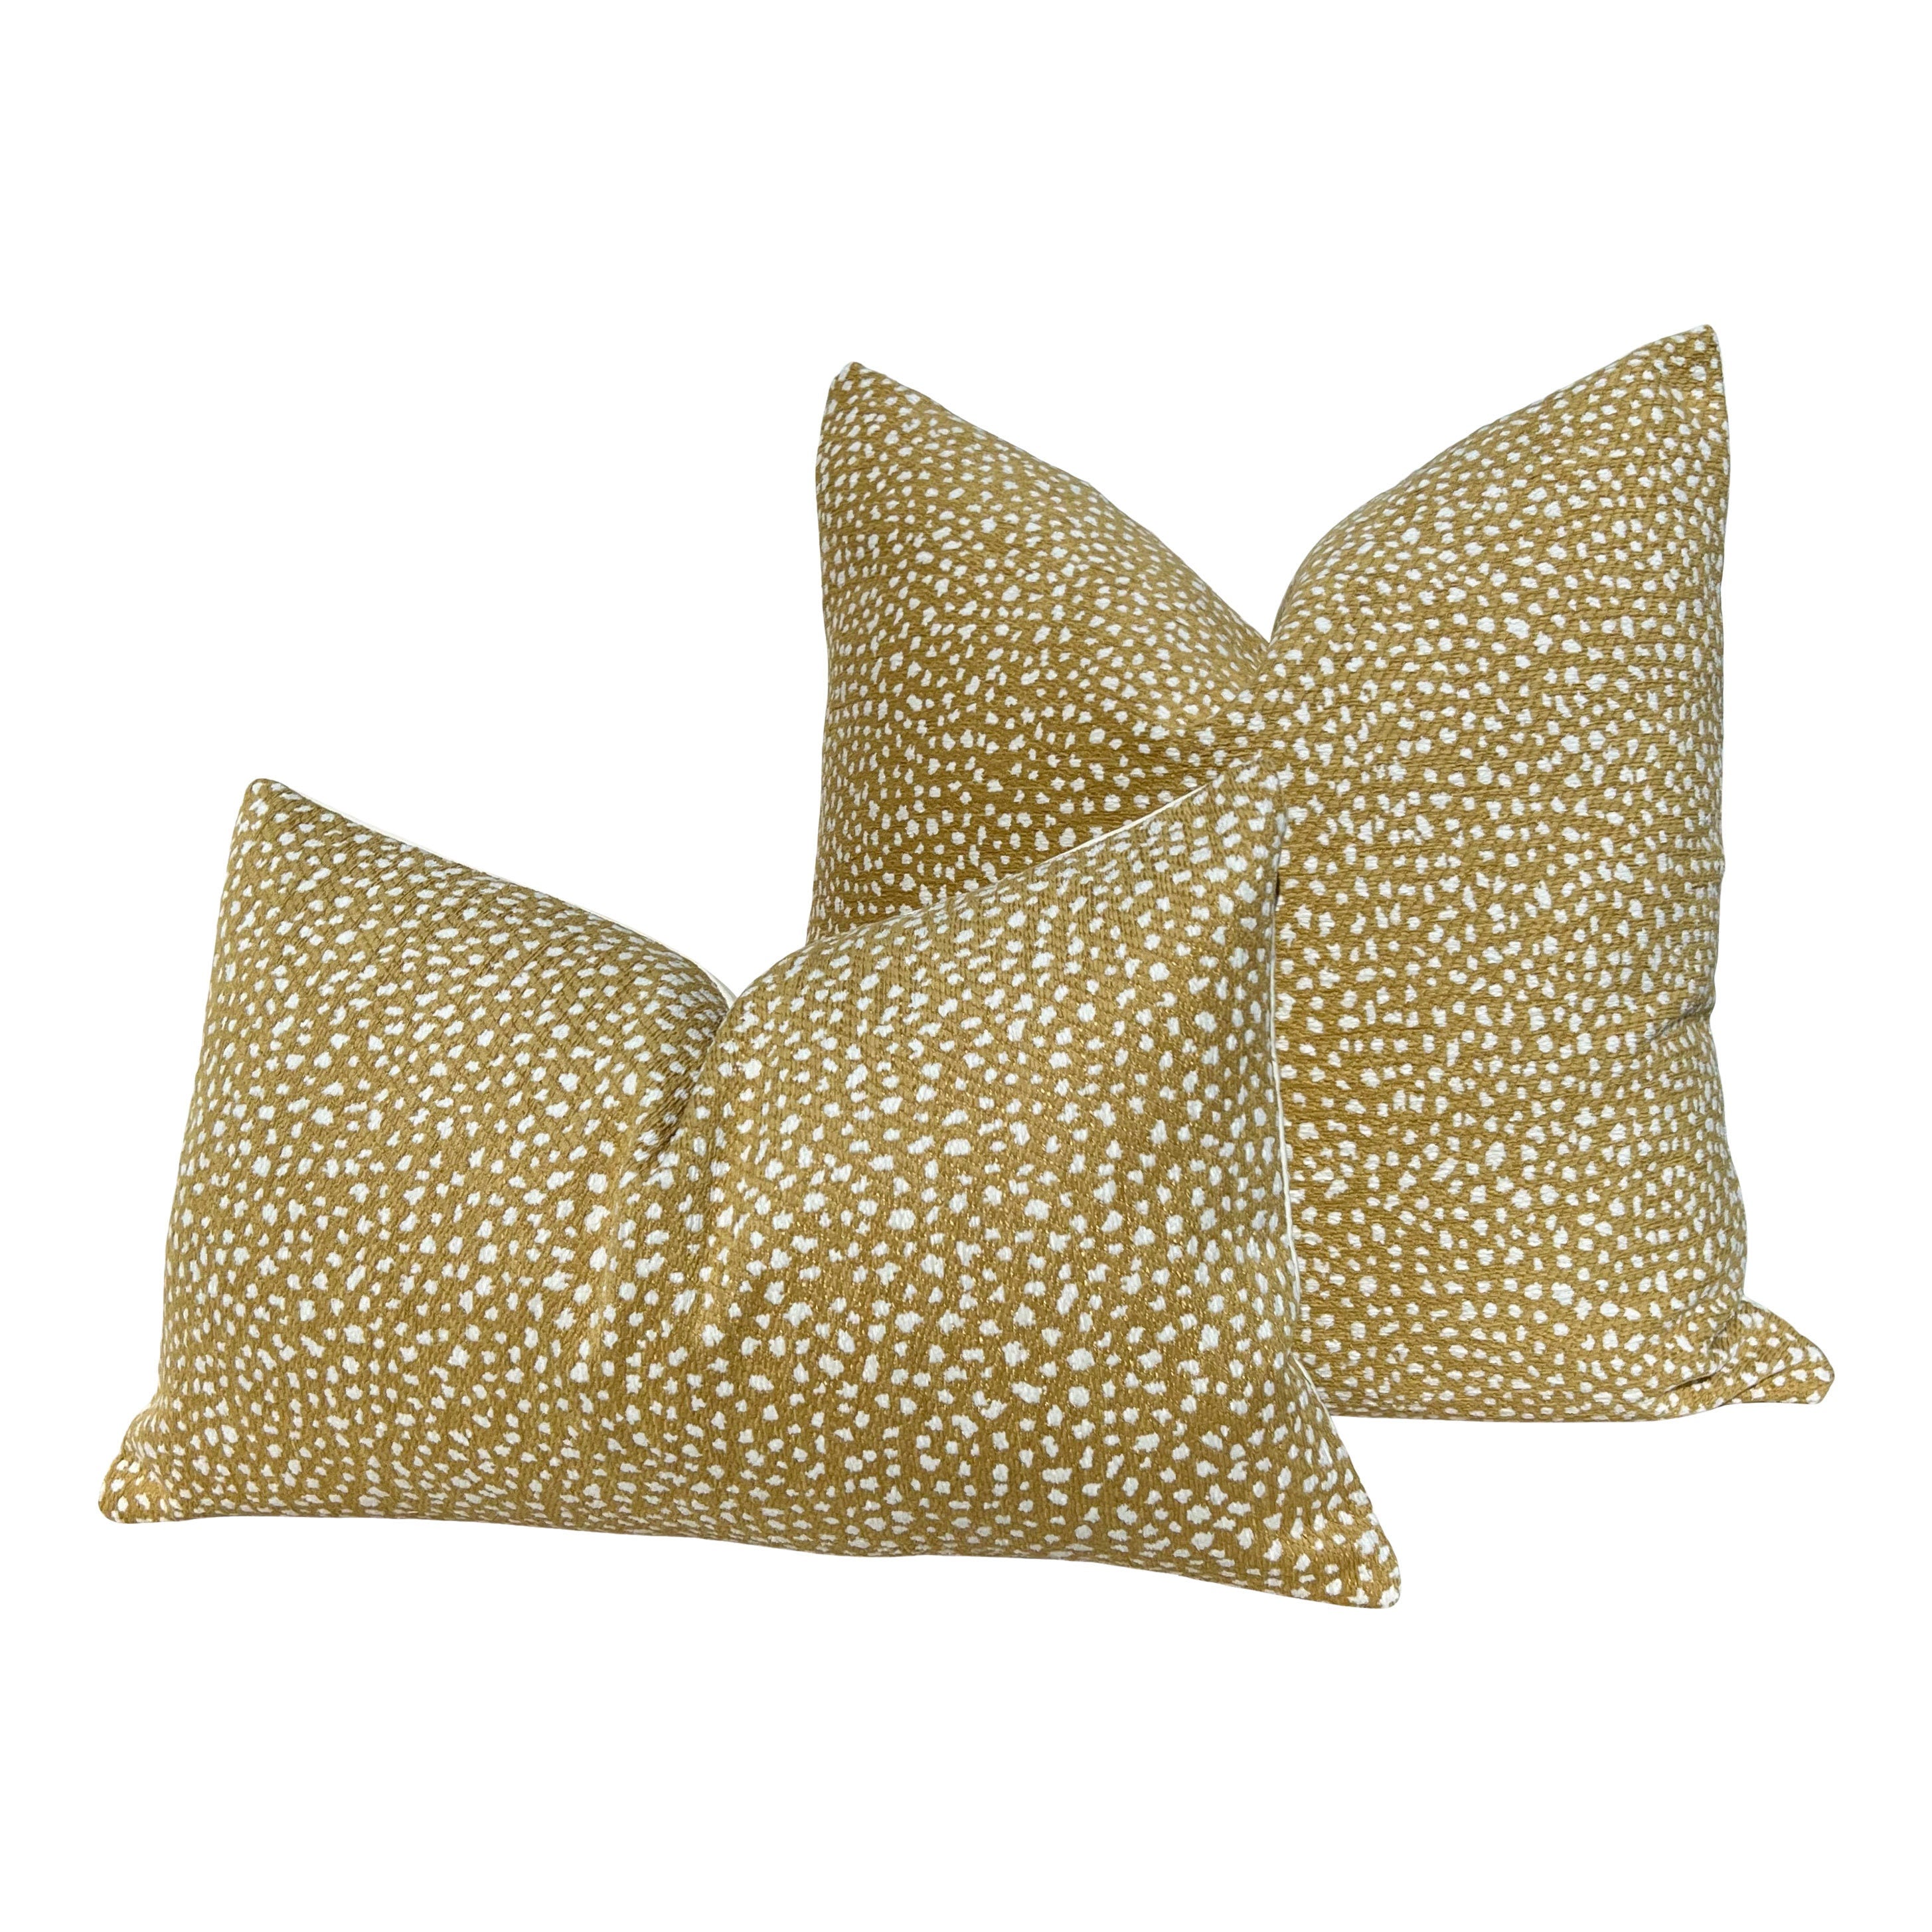 Thibaut Fawn Indoor Outdoor Pillow in Straw. Outdoor Designer Pillows, High End Pillows, Beige Modern Pillow, Animal Print Lumbar Pillow